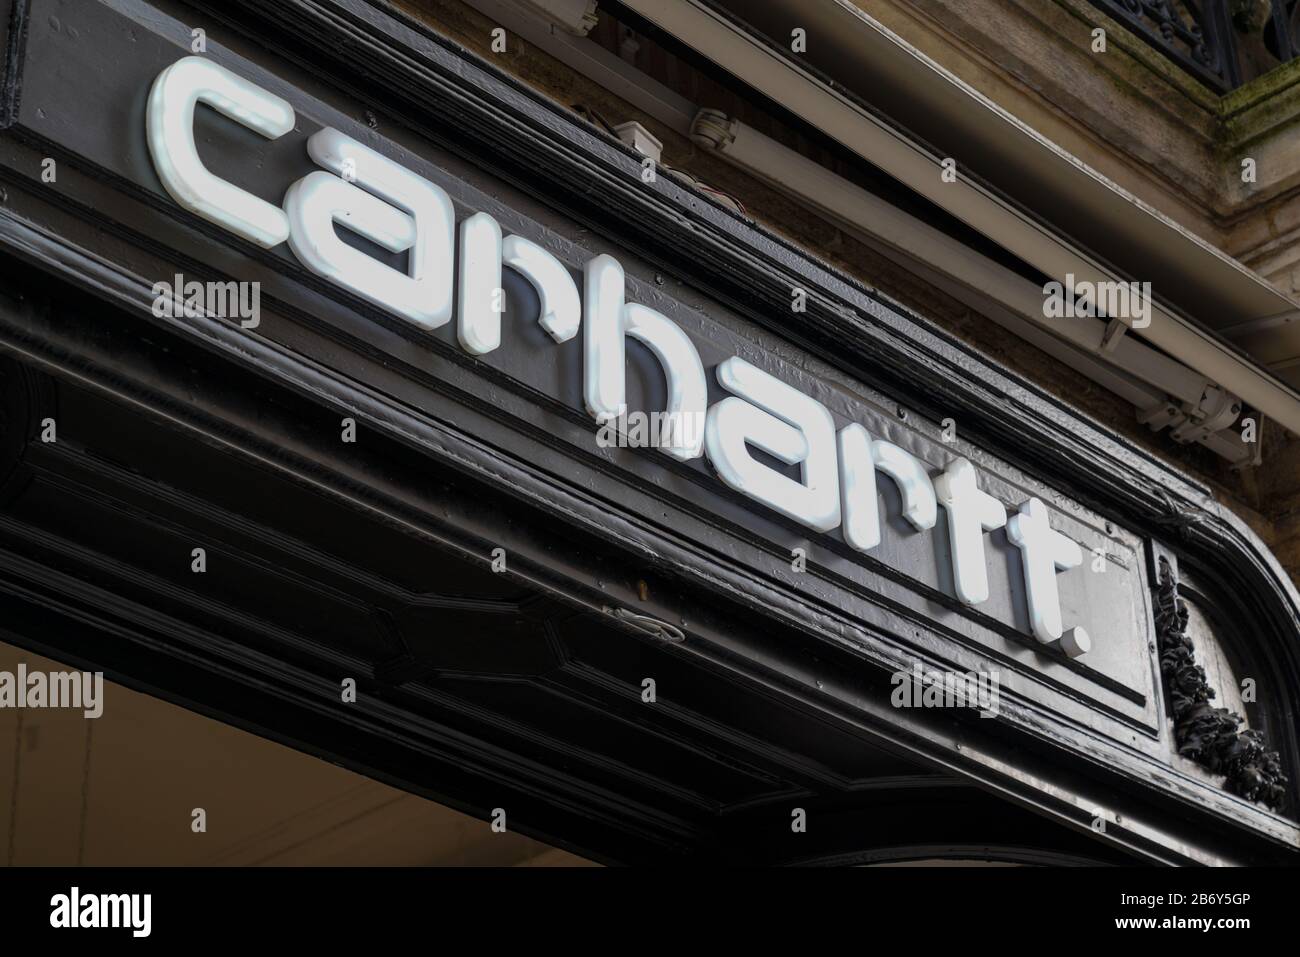 Bordeaux , Aquitaine / France - 10 28 2019 : Carhartt shop sign boutique Apparel Store logo work wear Stock Photo